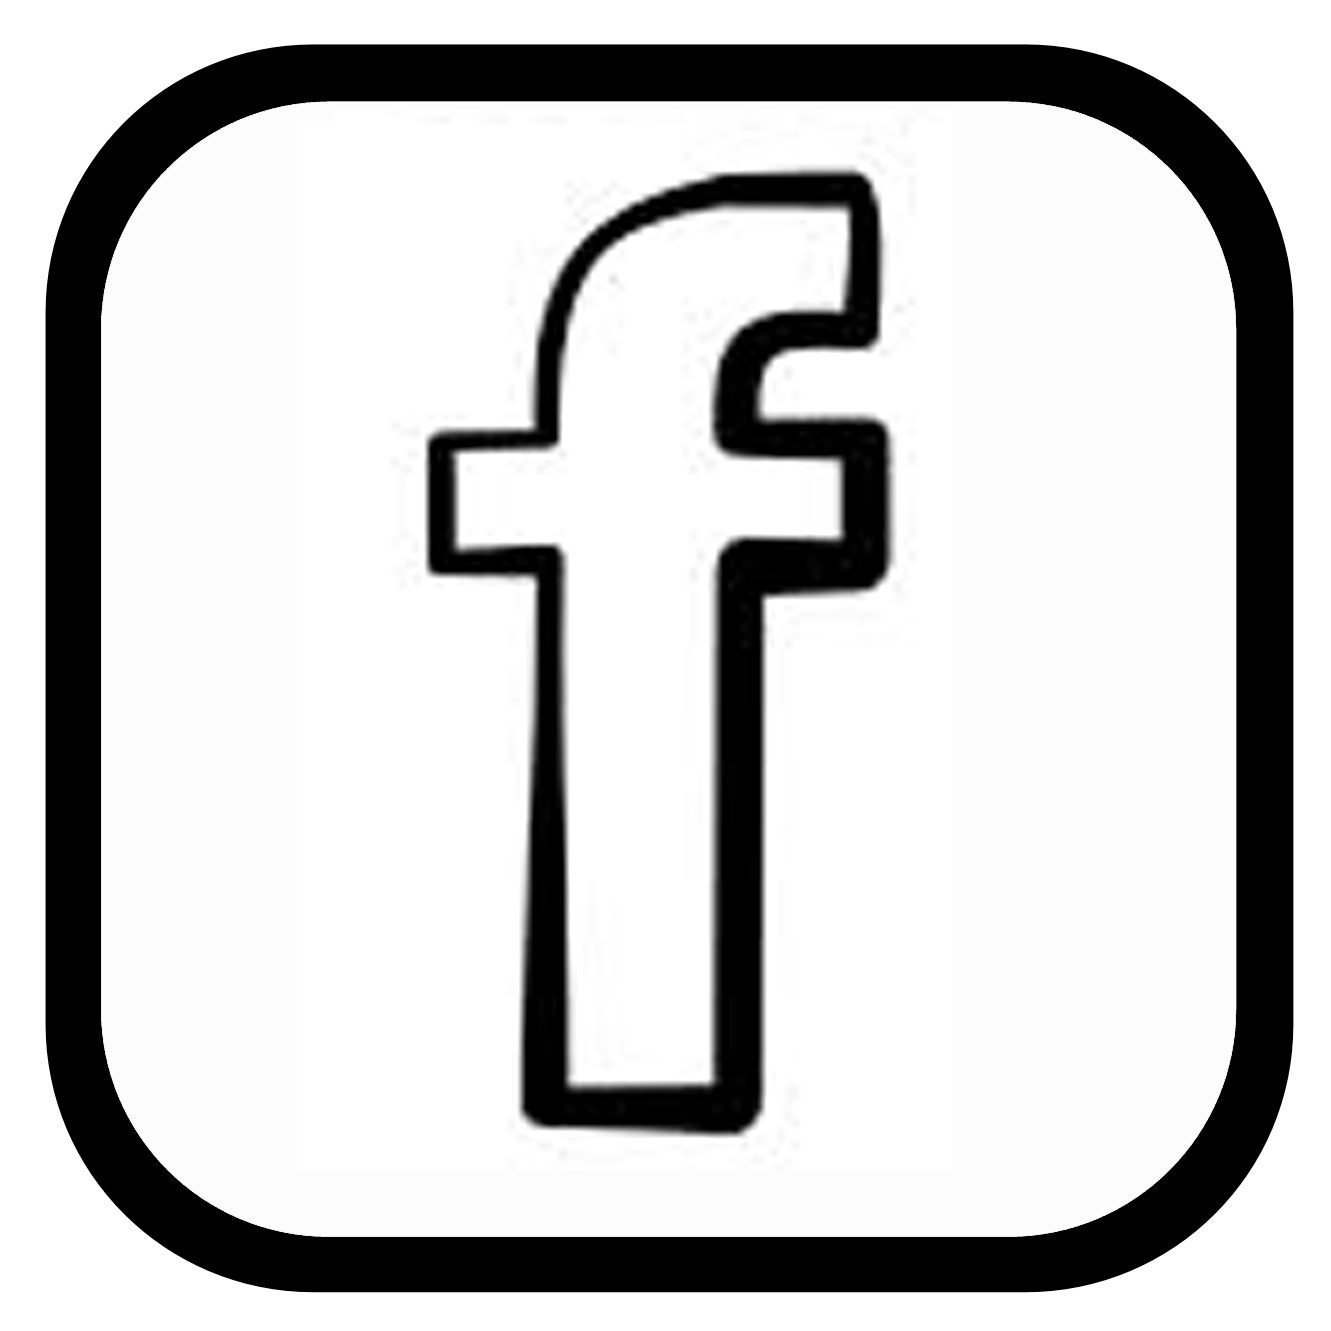 Black Facebook Logo - Facebook Icon White Image Icon Black and White